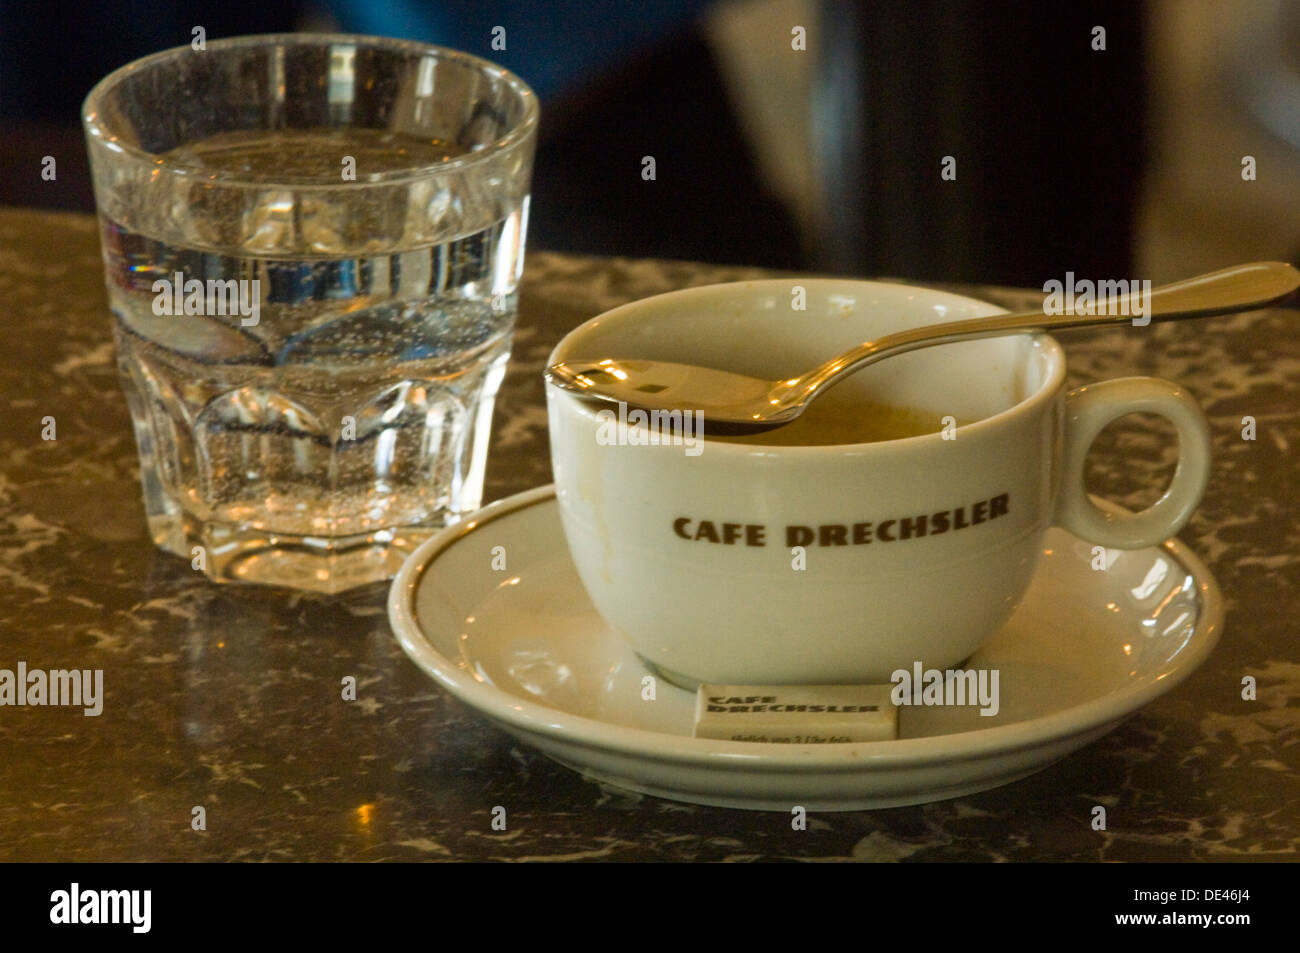 Österreich, Wien 6, Cafe Drechsler, Linke Wienzeile 22, ein Wiener Cafe mit einem Glas Wasser. Stock Photo